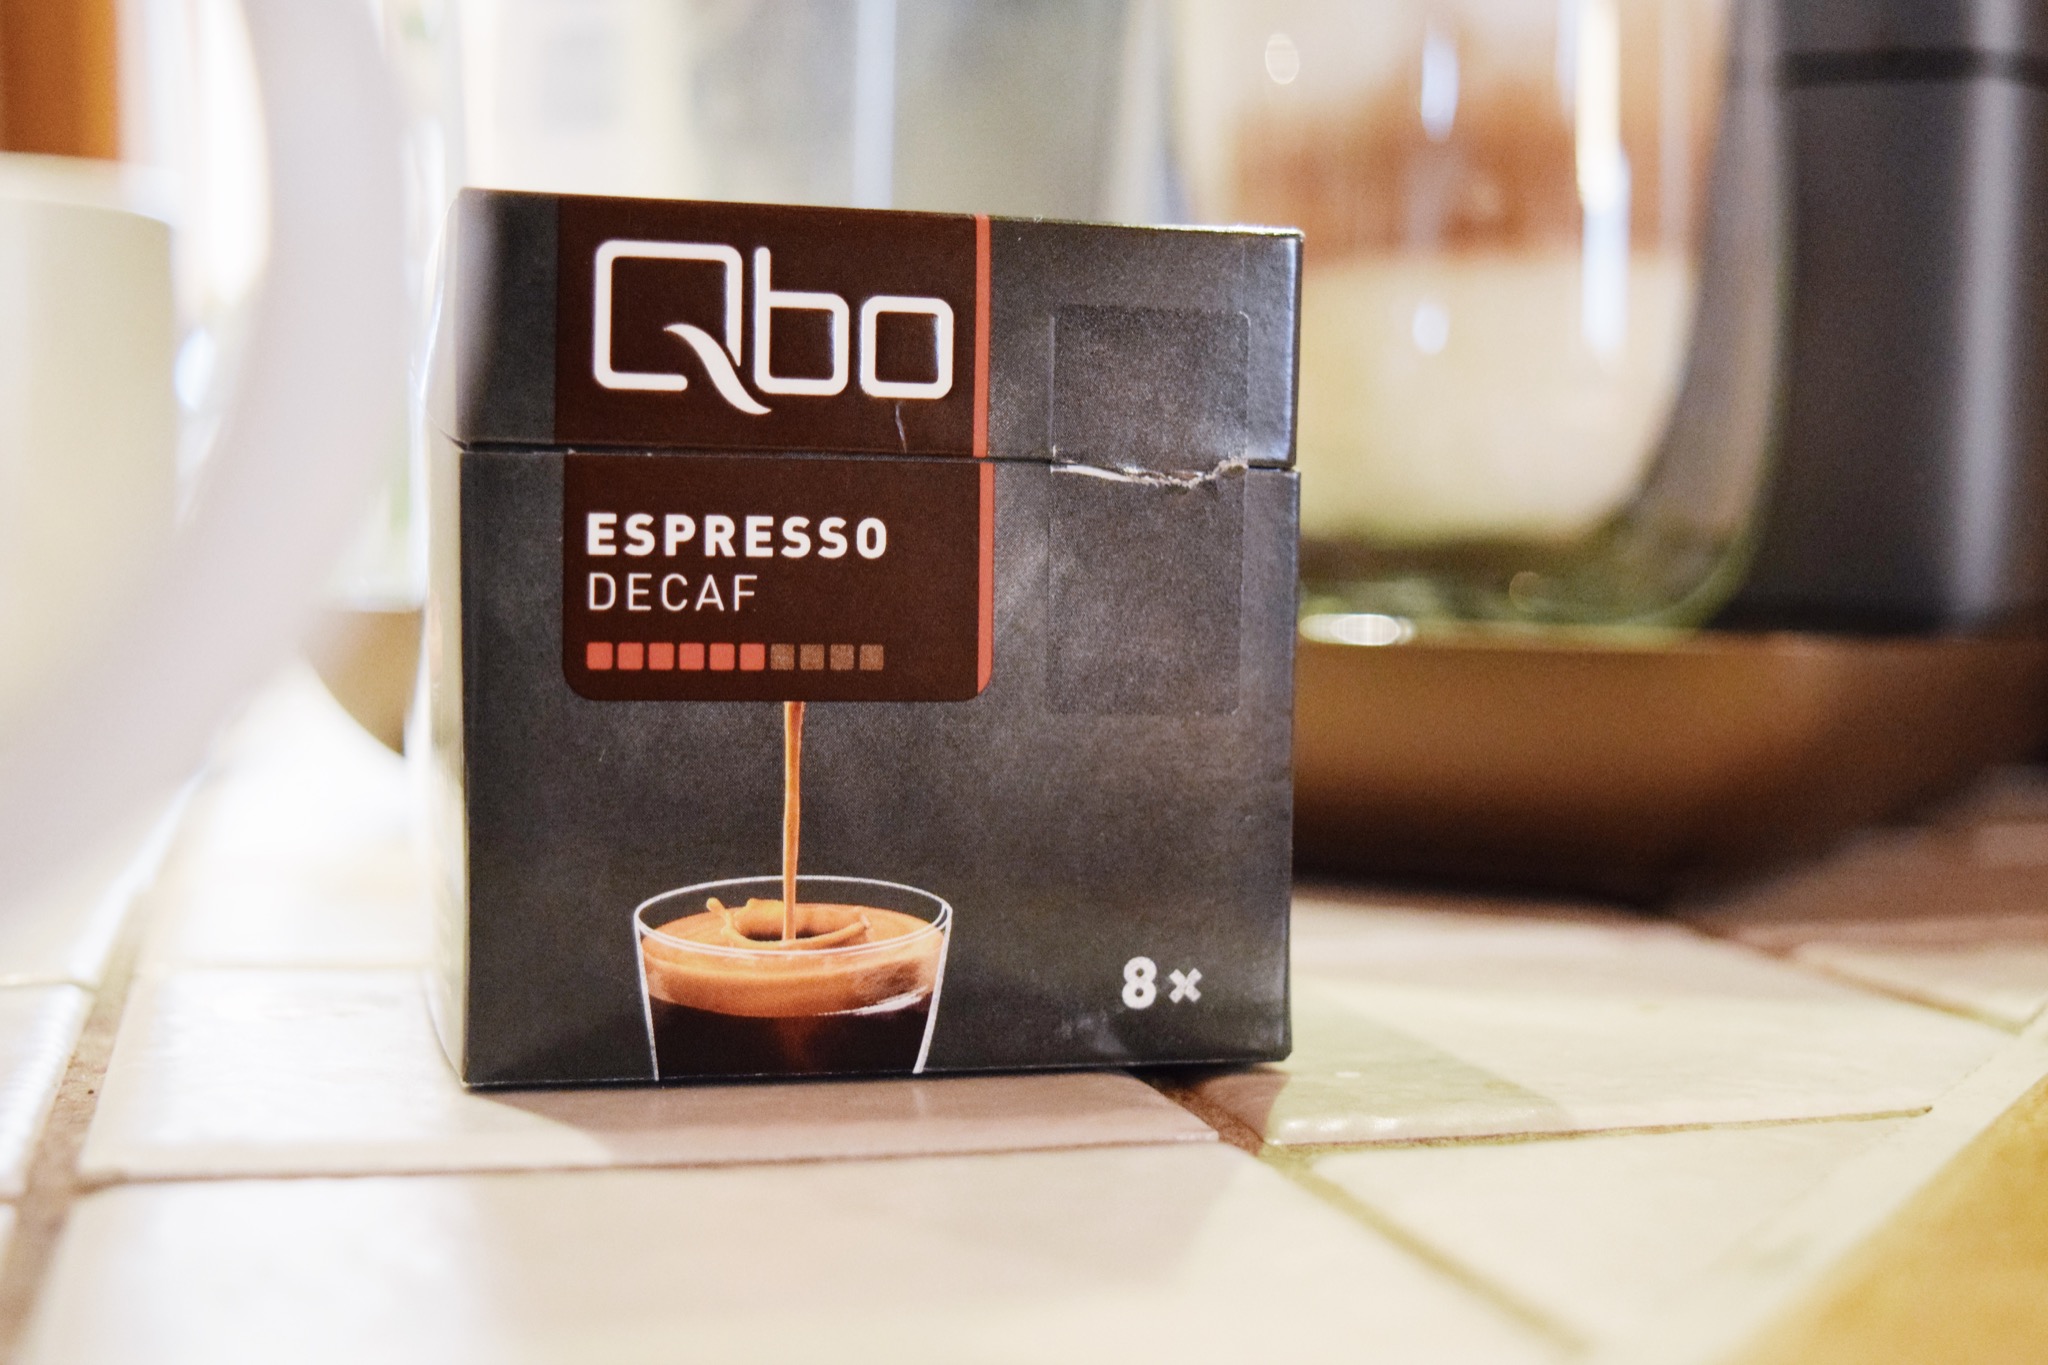 Qbo Decaf Espresso49